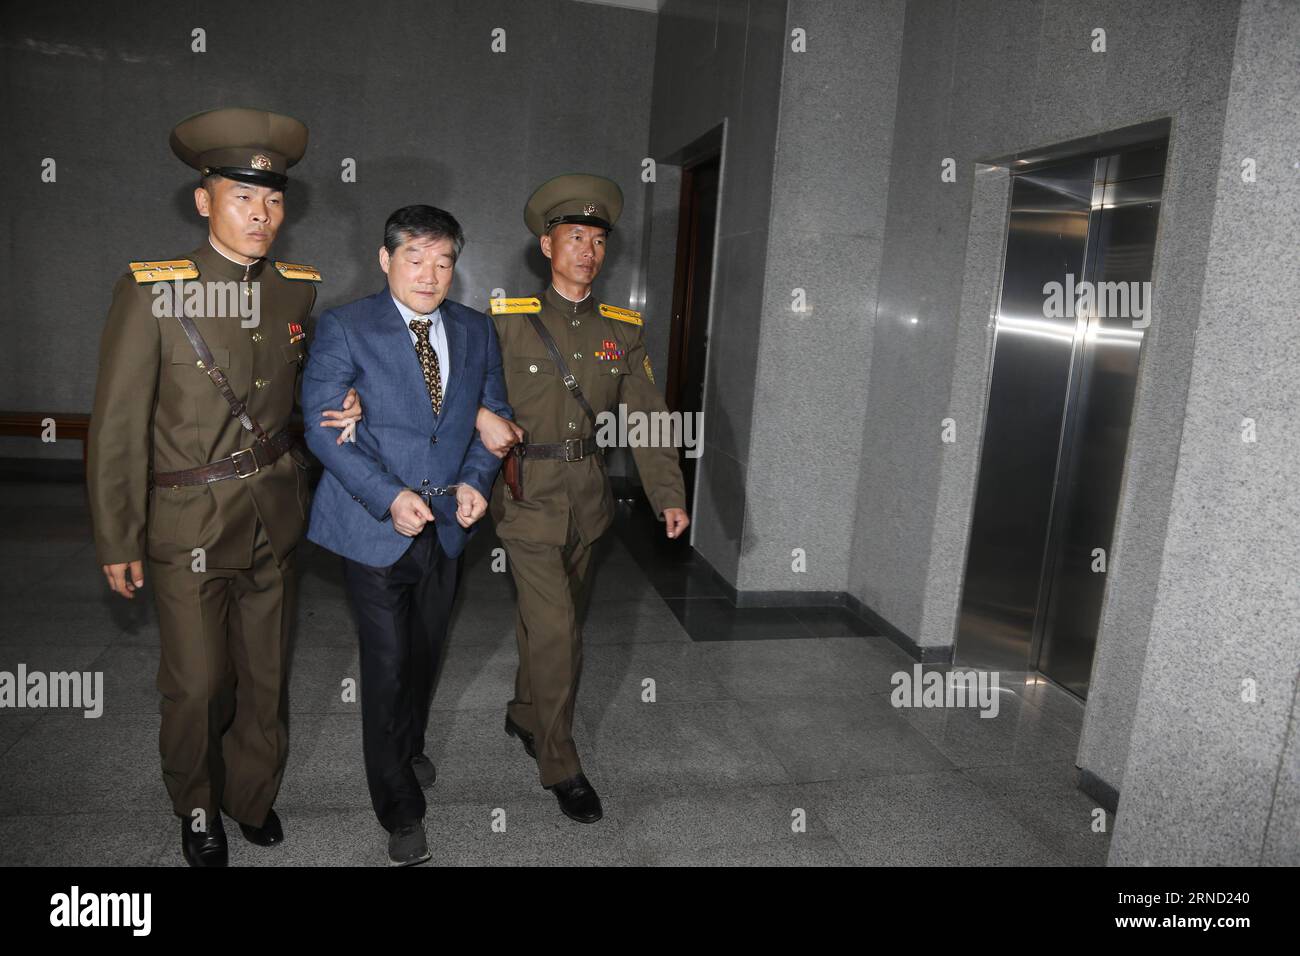 Südkoreaner- verurteilt (160429) -- PYONGYANG, 29 de abril de 2016 -- Kim Dong-chul (C) es escoltado a la Corte Suprema de Pyongyang, República Popular Democrática de Corea (RPDC), 29 de abril de 2016. La Corte Suprema de la RPDC condenó el viernes al ciudadano estadounidense nacido en Corea del Sur a 10 años de trabajos forzados por subversión del sistema social de la RPDC y actividades de espionaje. DPRK-PYONGYANG-S.KOREA NACIDO SENTENCIA ESTADOUNIDENSE GuoxYina PUBLICATIONxNOTxINxCHN Temas La semana Imágenes El día que Corea del Norte Estados Unidos Corea del Sur condenaron 160429 Pyongyang 29 de abril Foto de stock